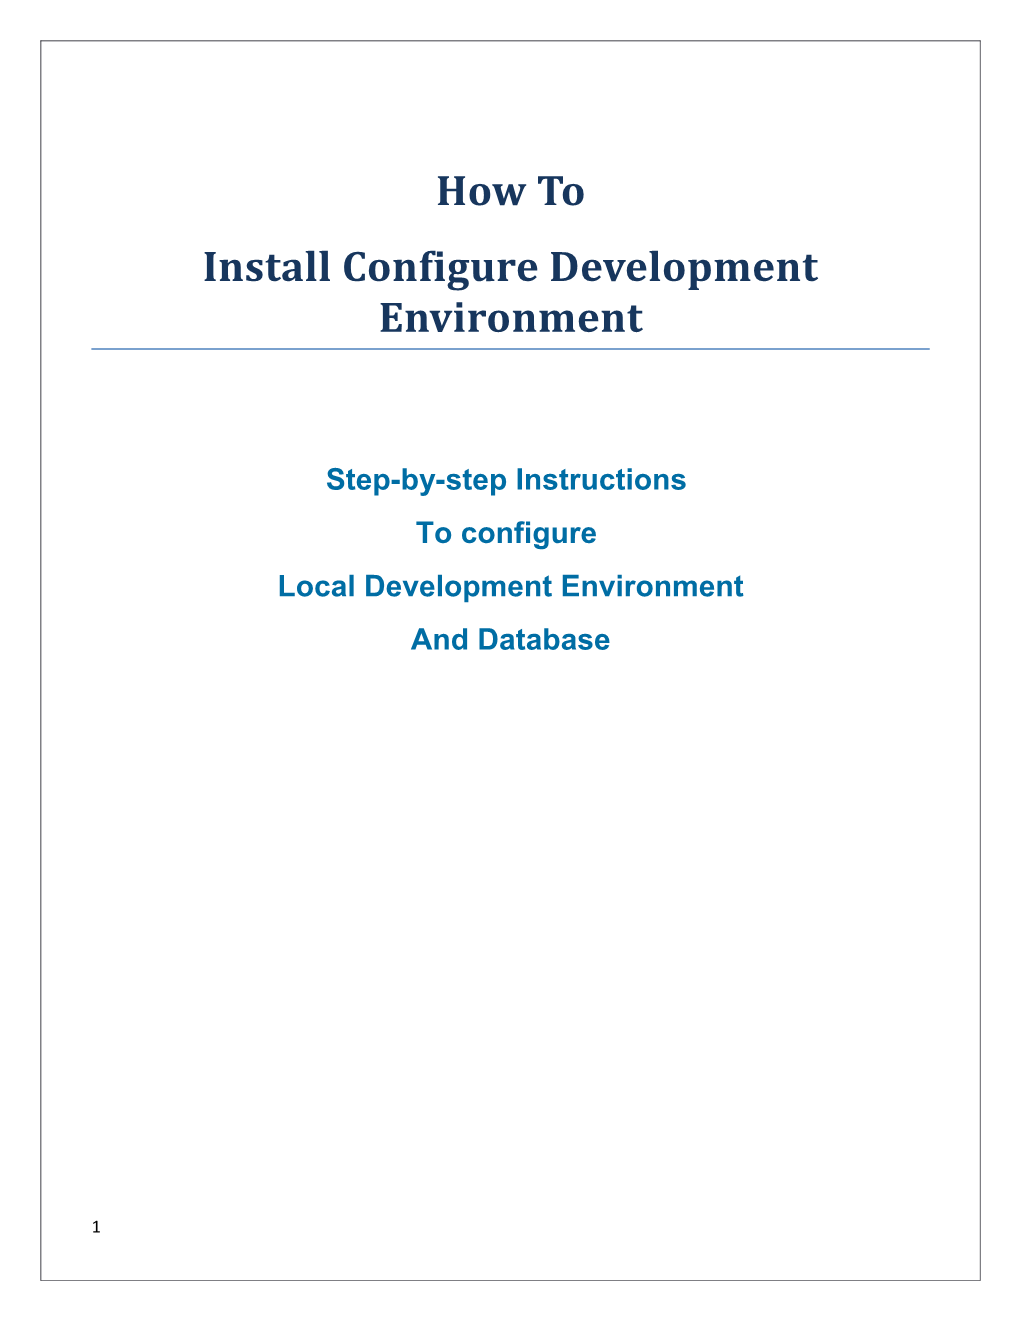 Install Configure Development Environment